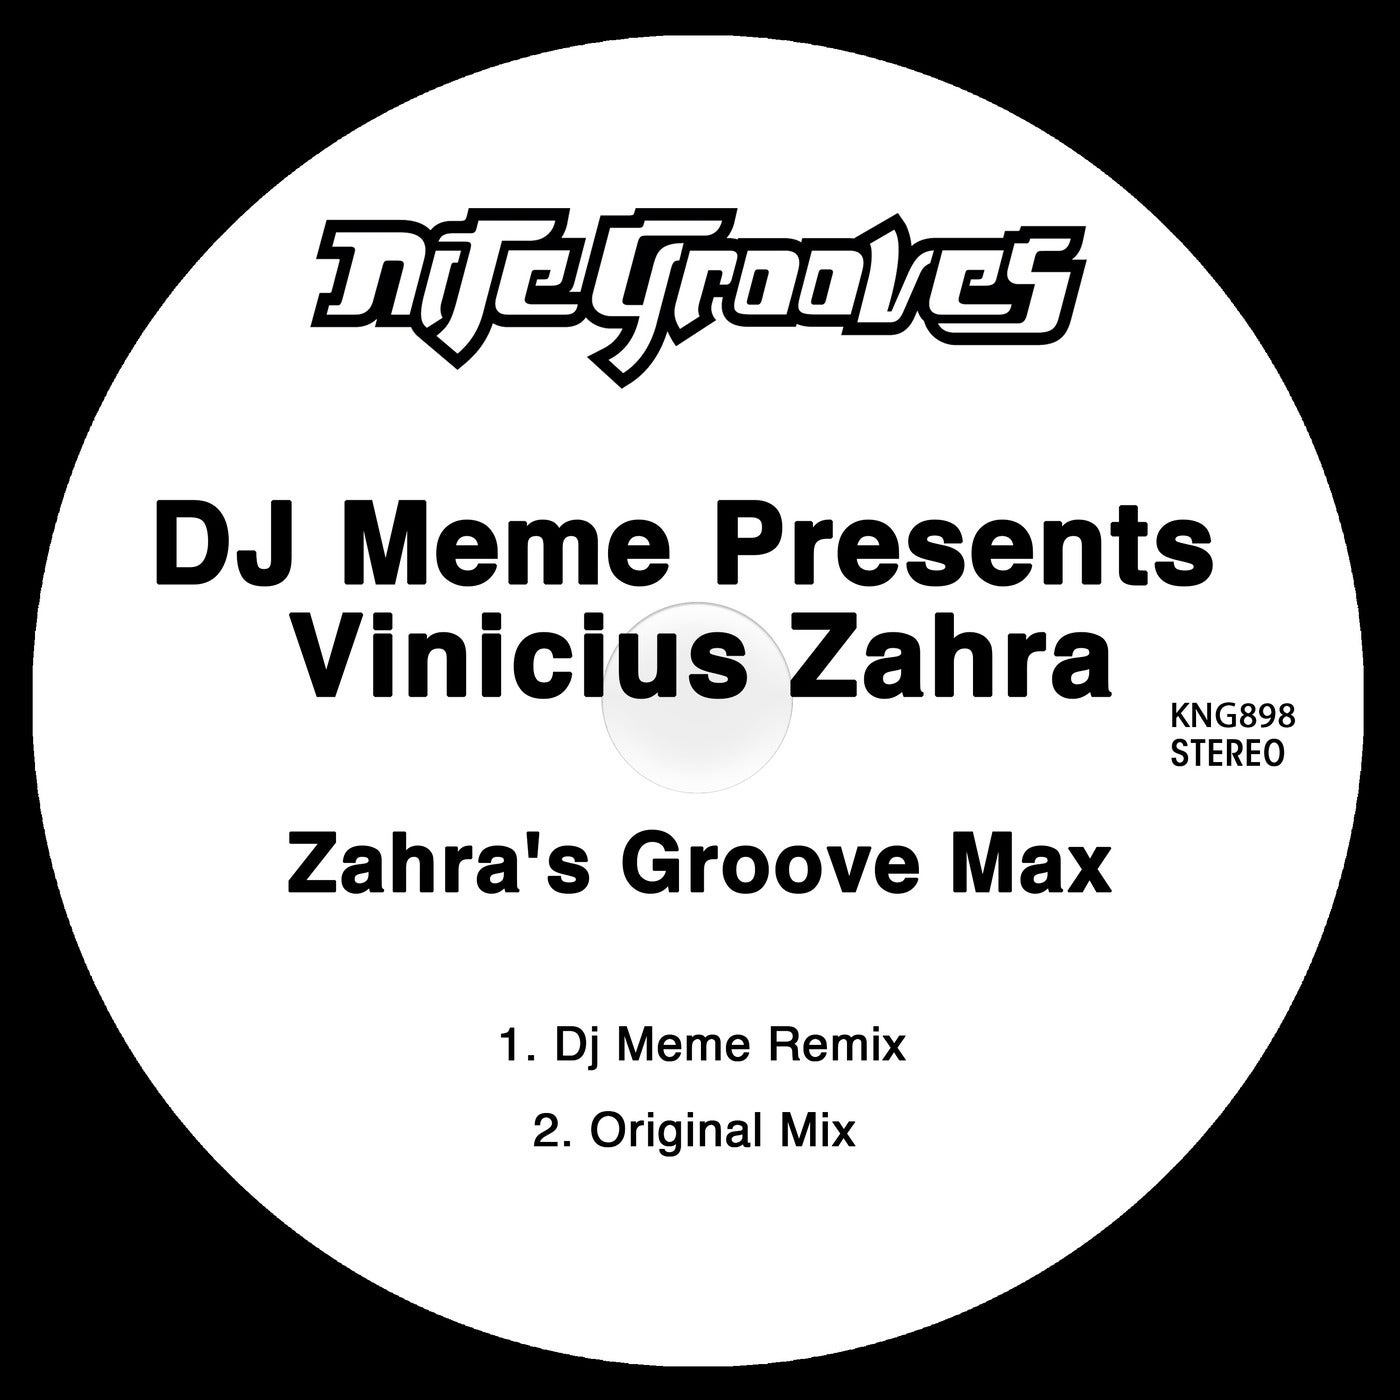 Zahra's Groove Max